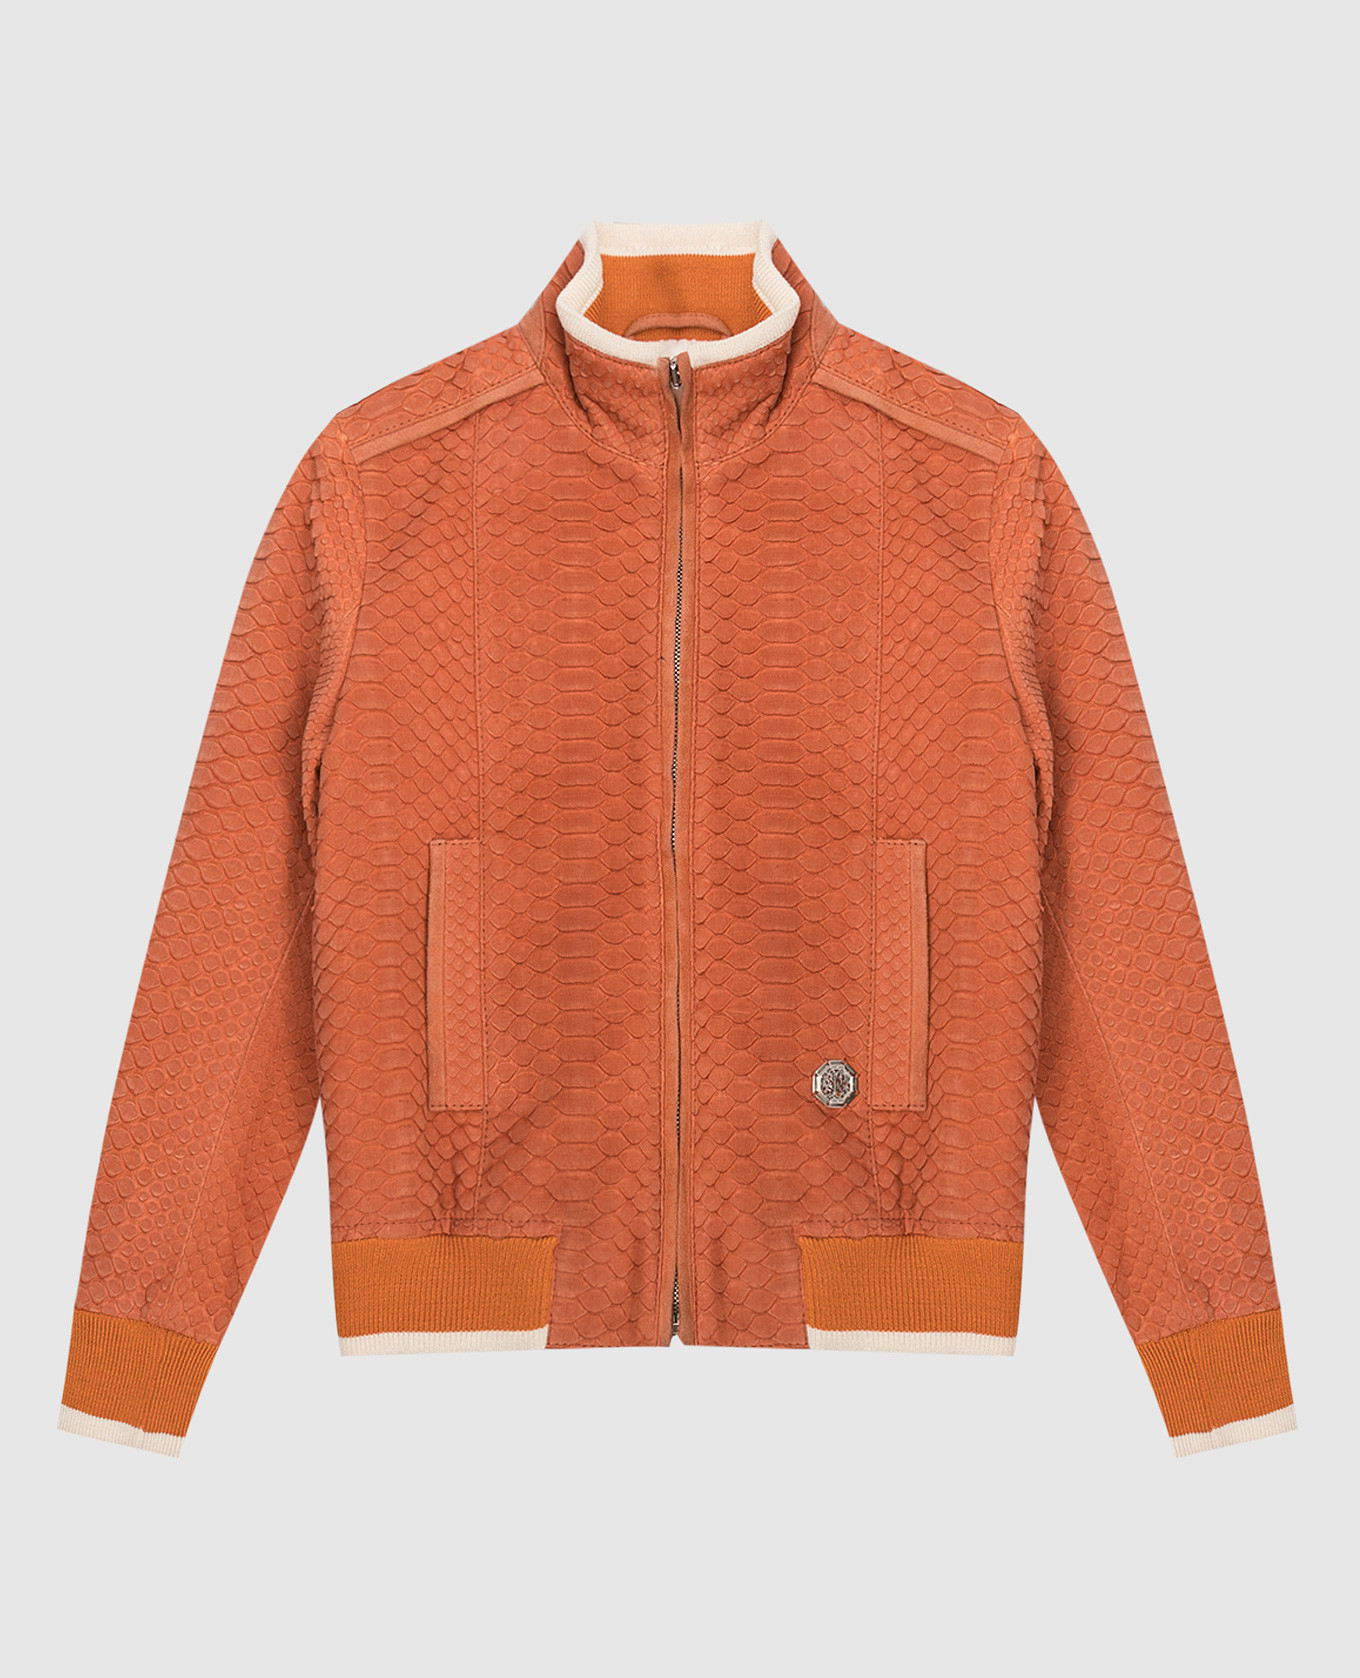 Children's orange python skin jacket